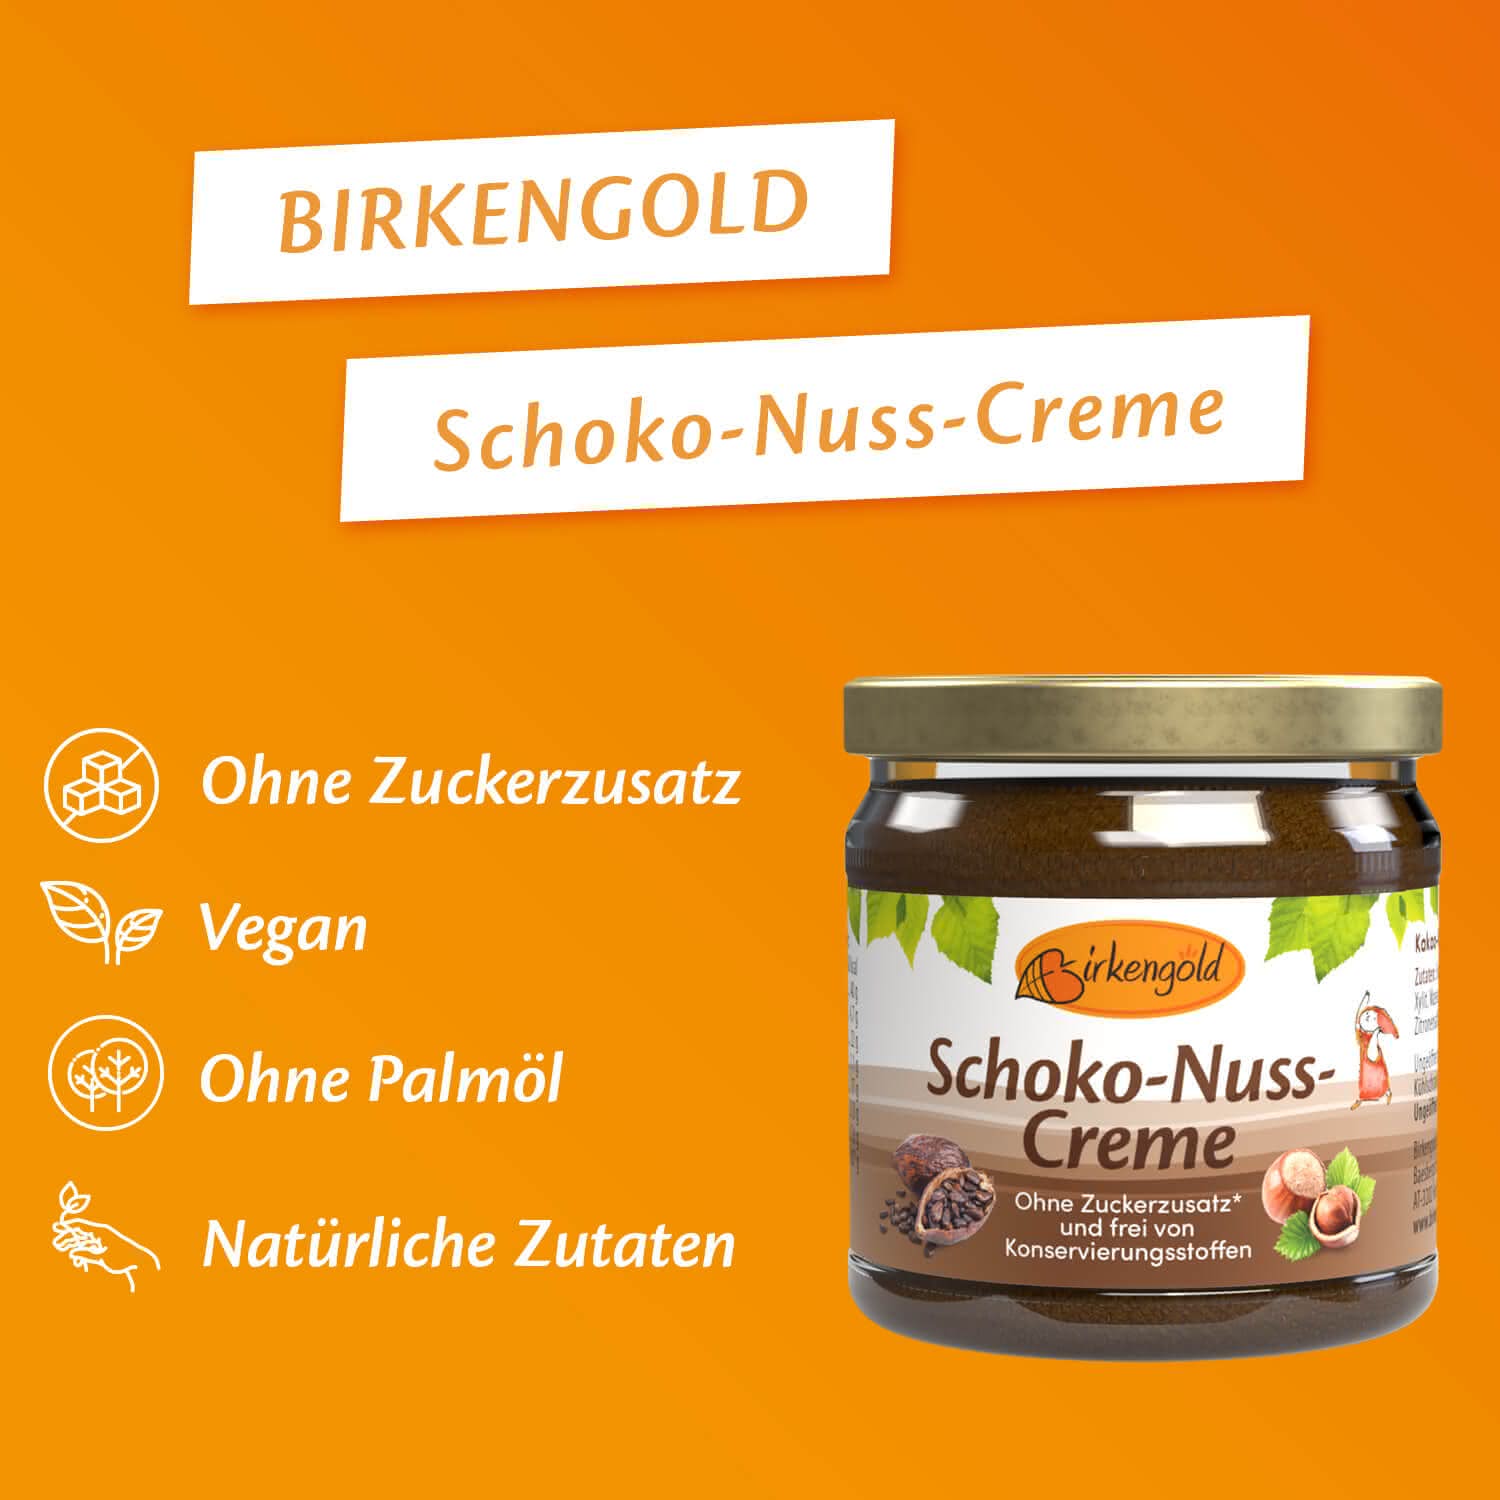 Schoko-Nuss-Creme mit Xylit 170 g - Zuckerfreier Brotaufstrich - Birkengold